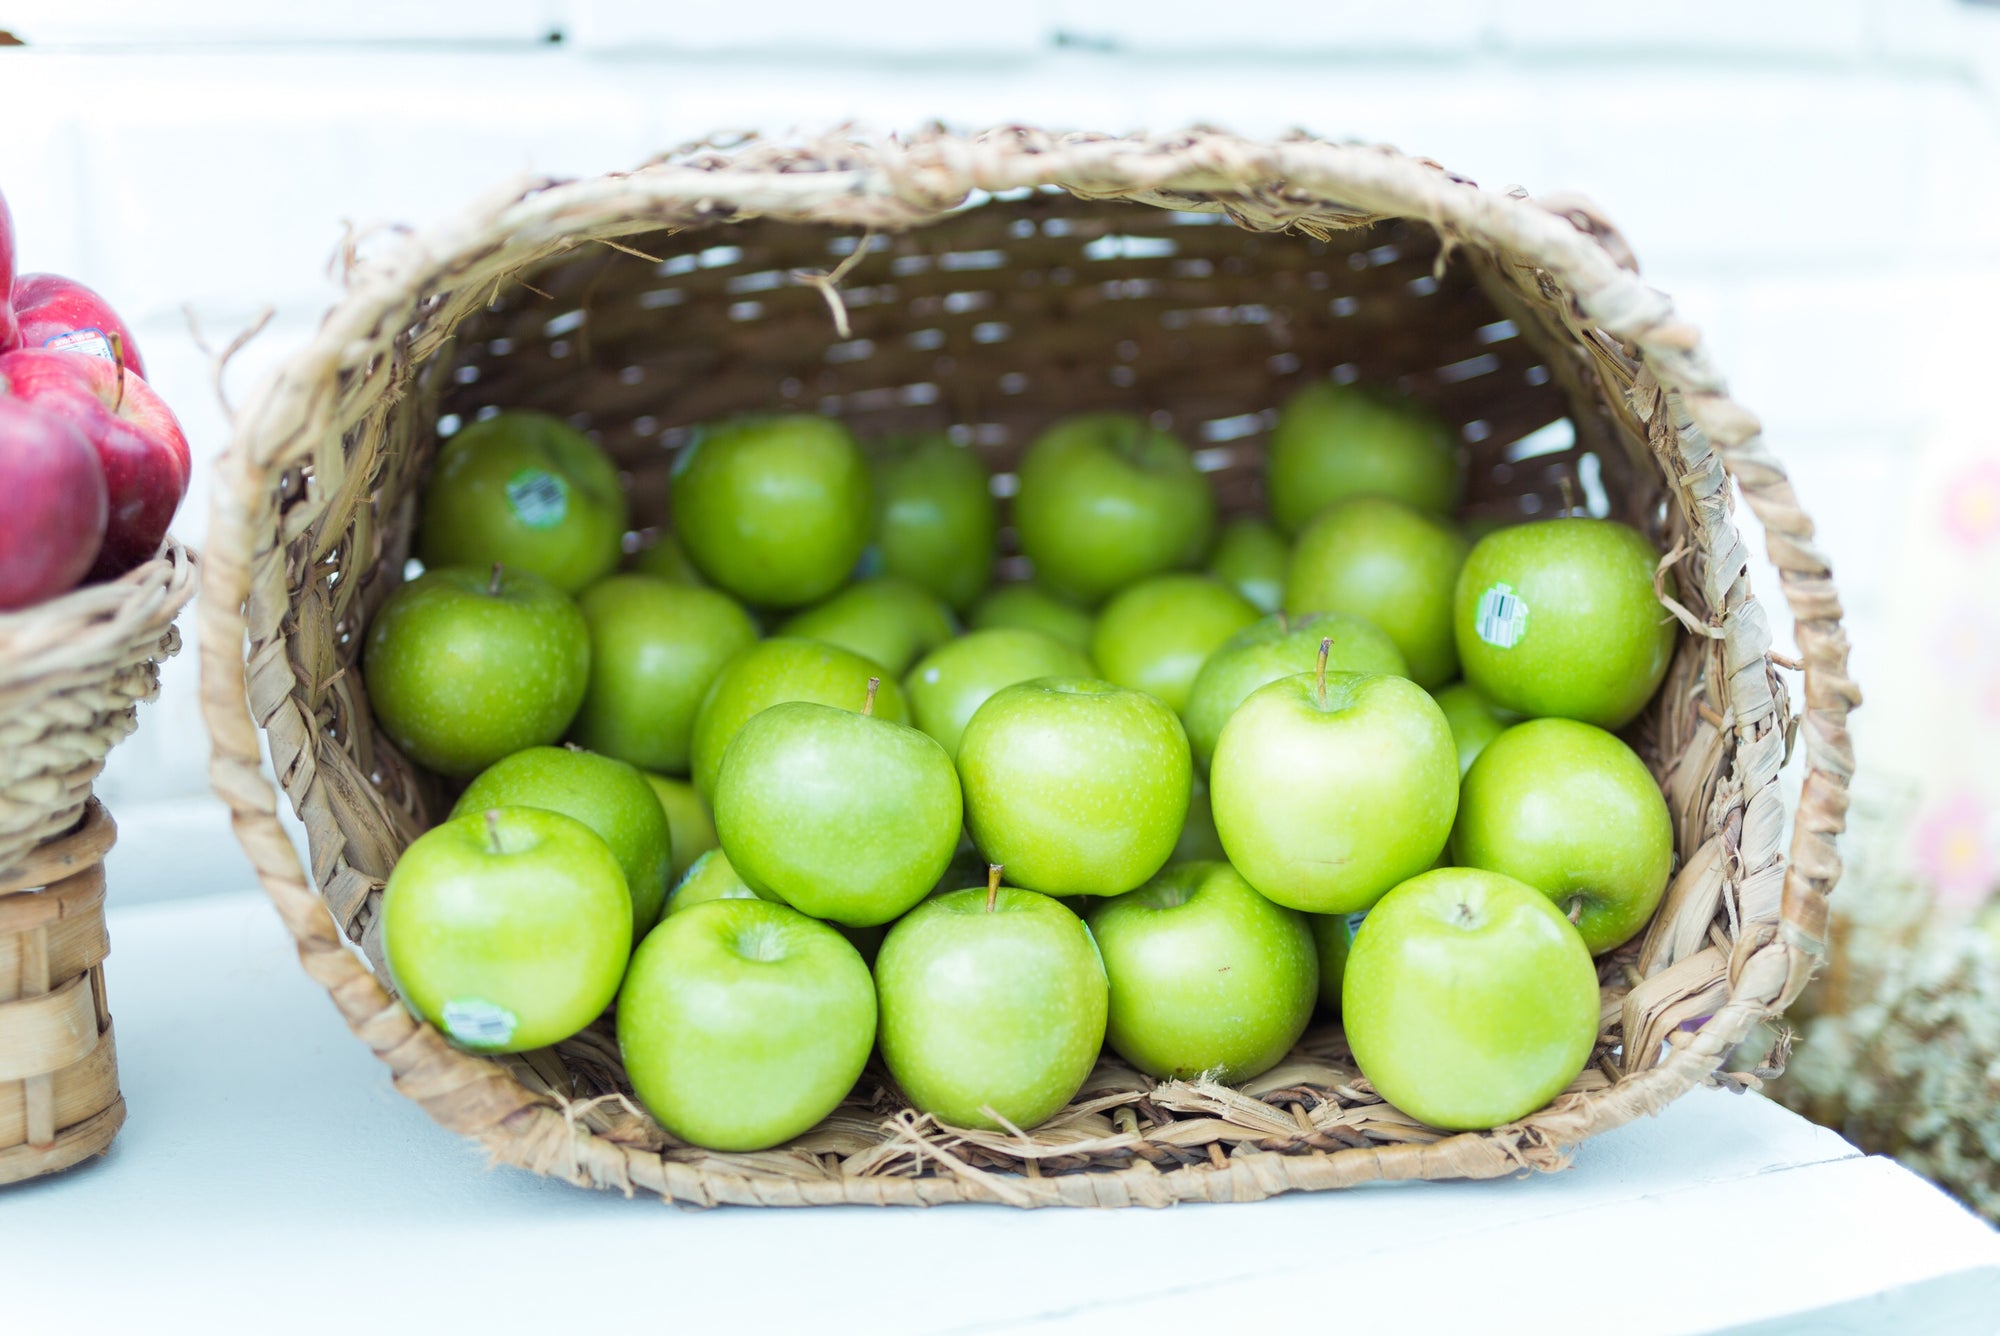 US Green Apples buy 5+1 Free